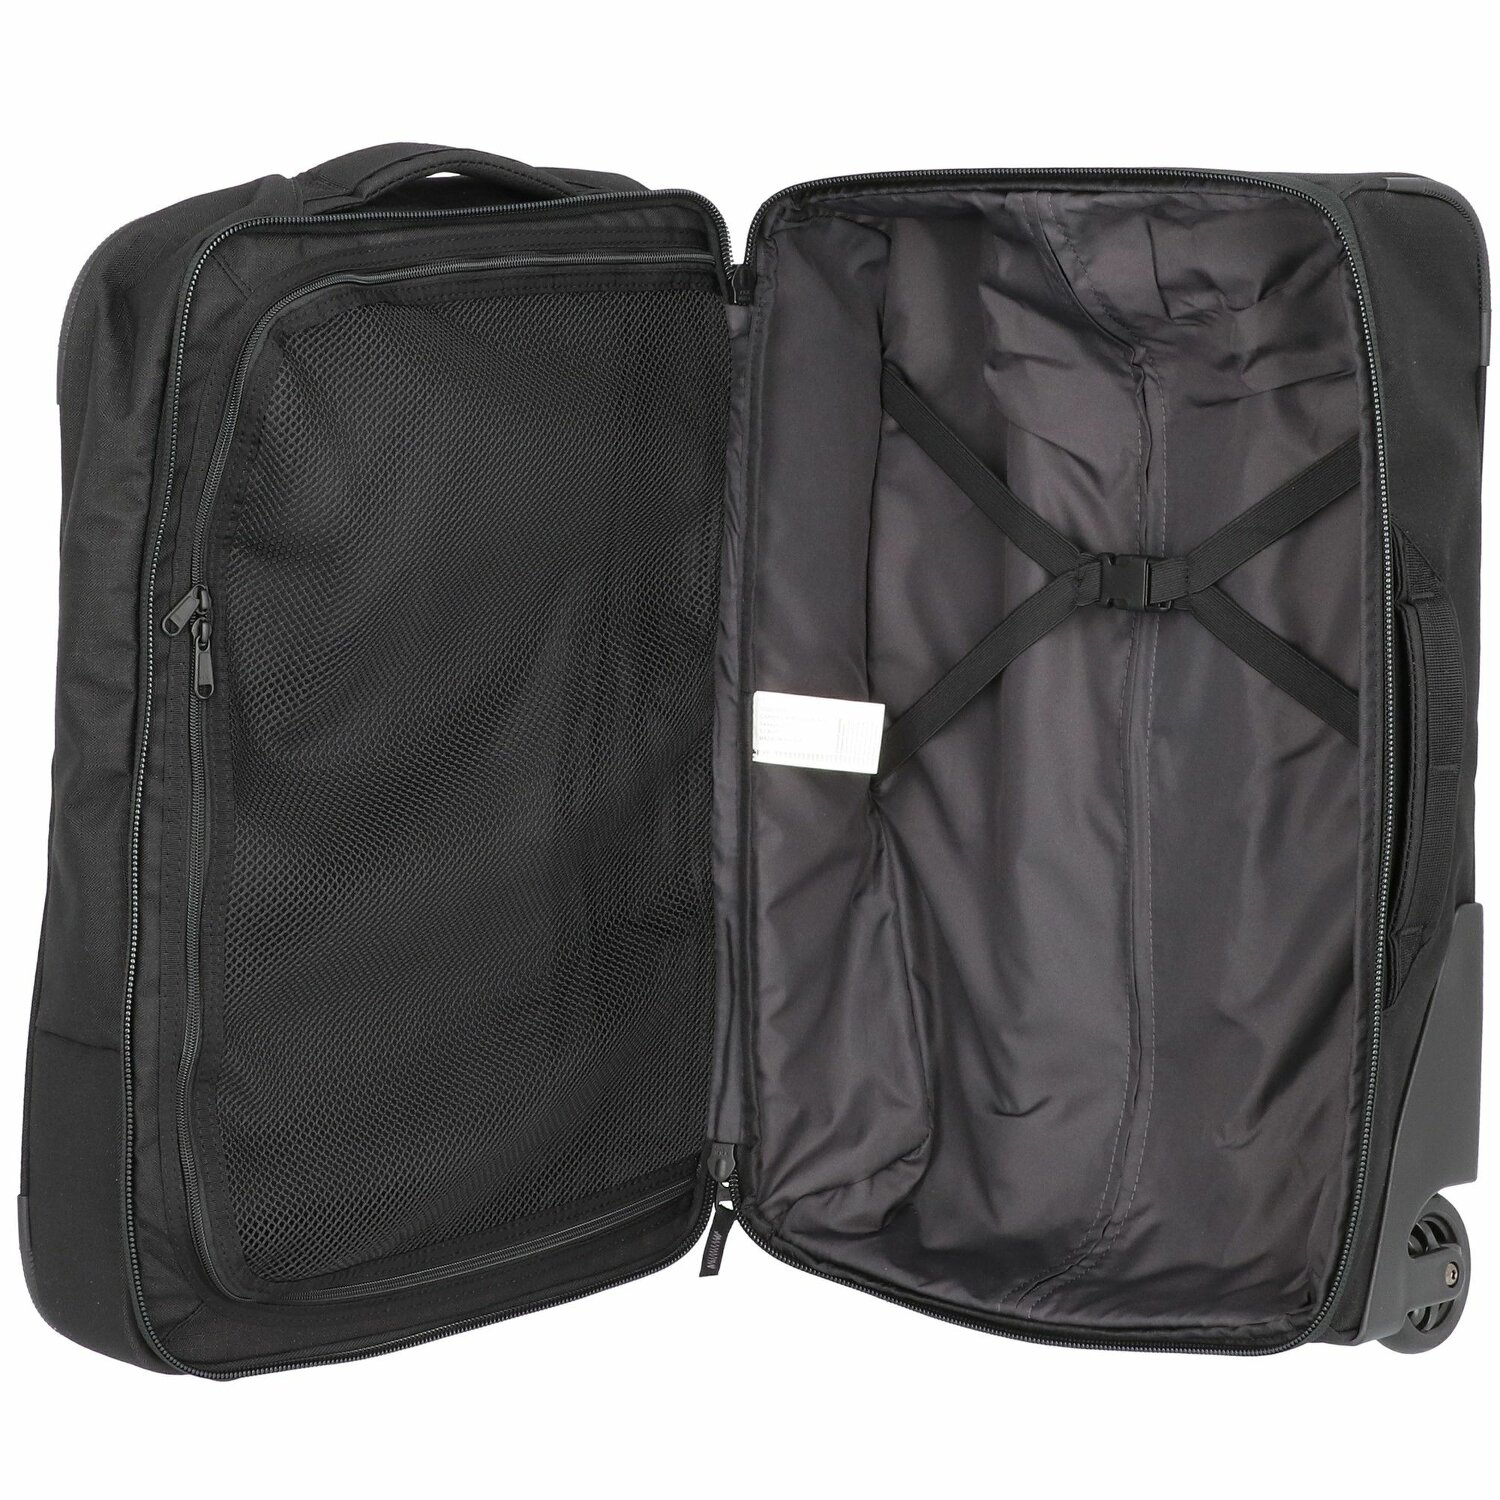 42 litres compartiment principal spacieux valise à roulettes robuste valise Sac de voyage Marque : DAKINEDakine Valise Carry On sur roulettes 